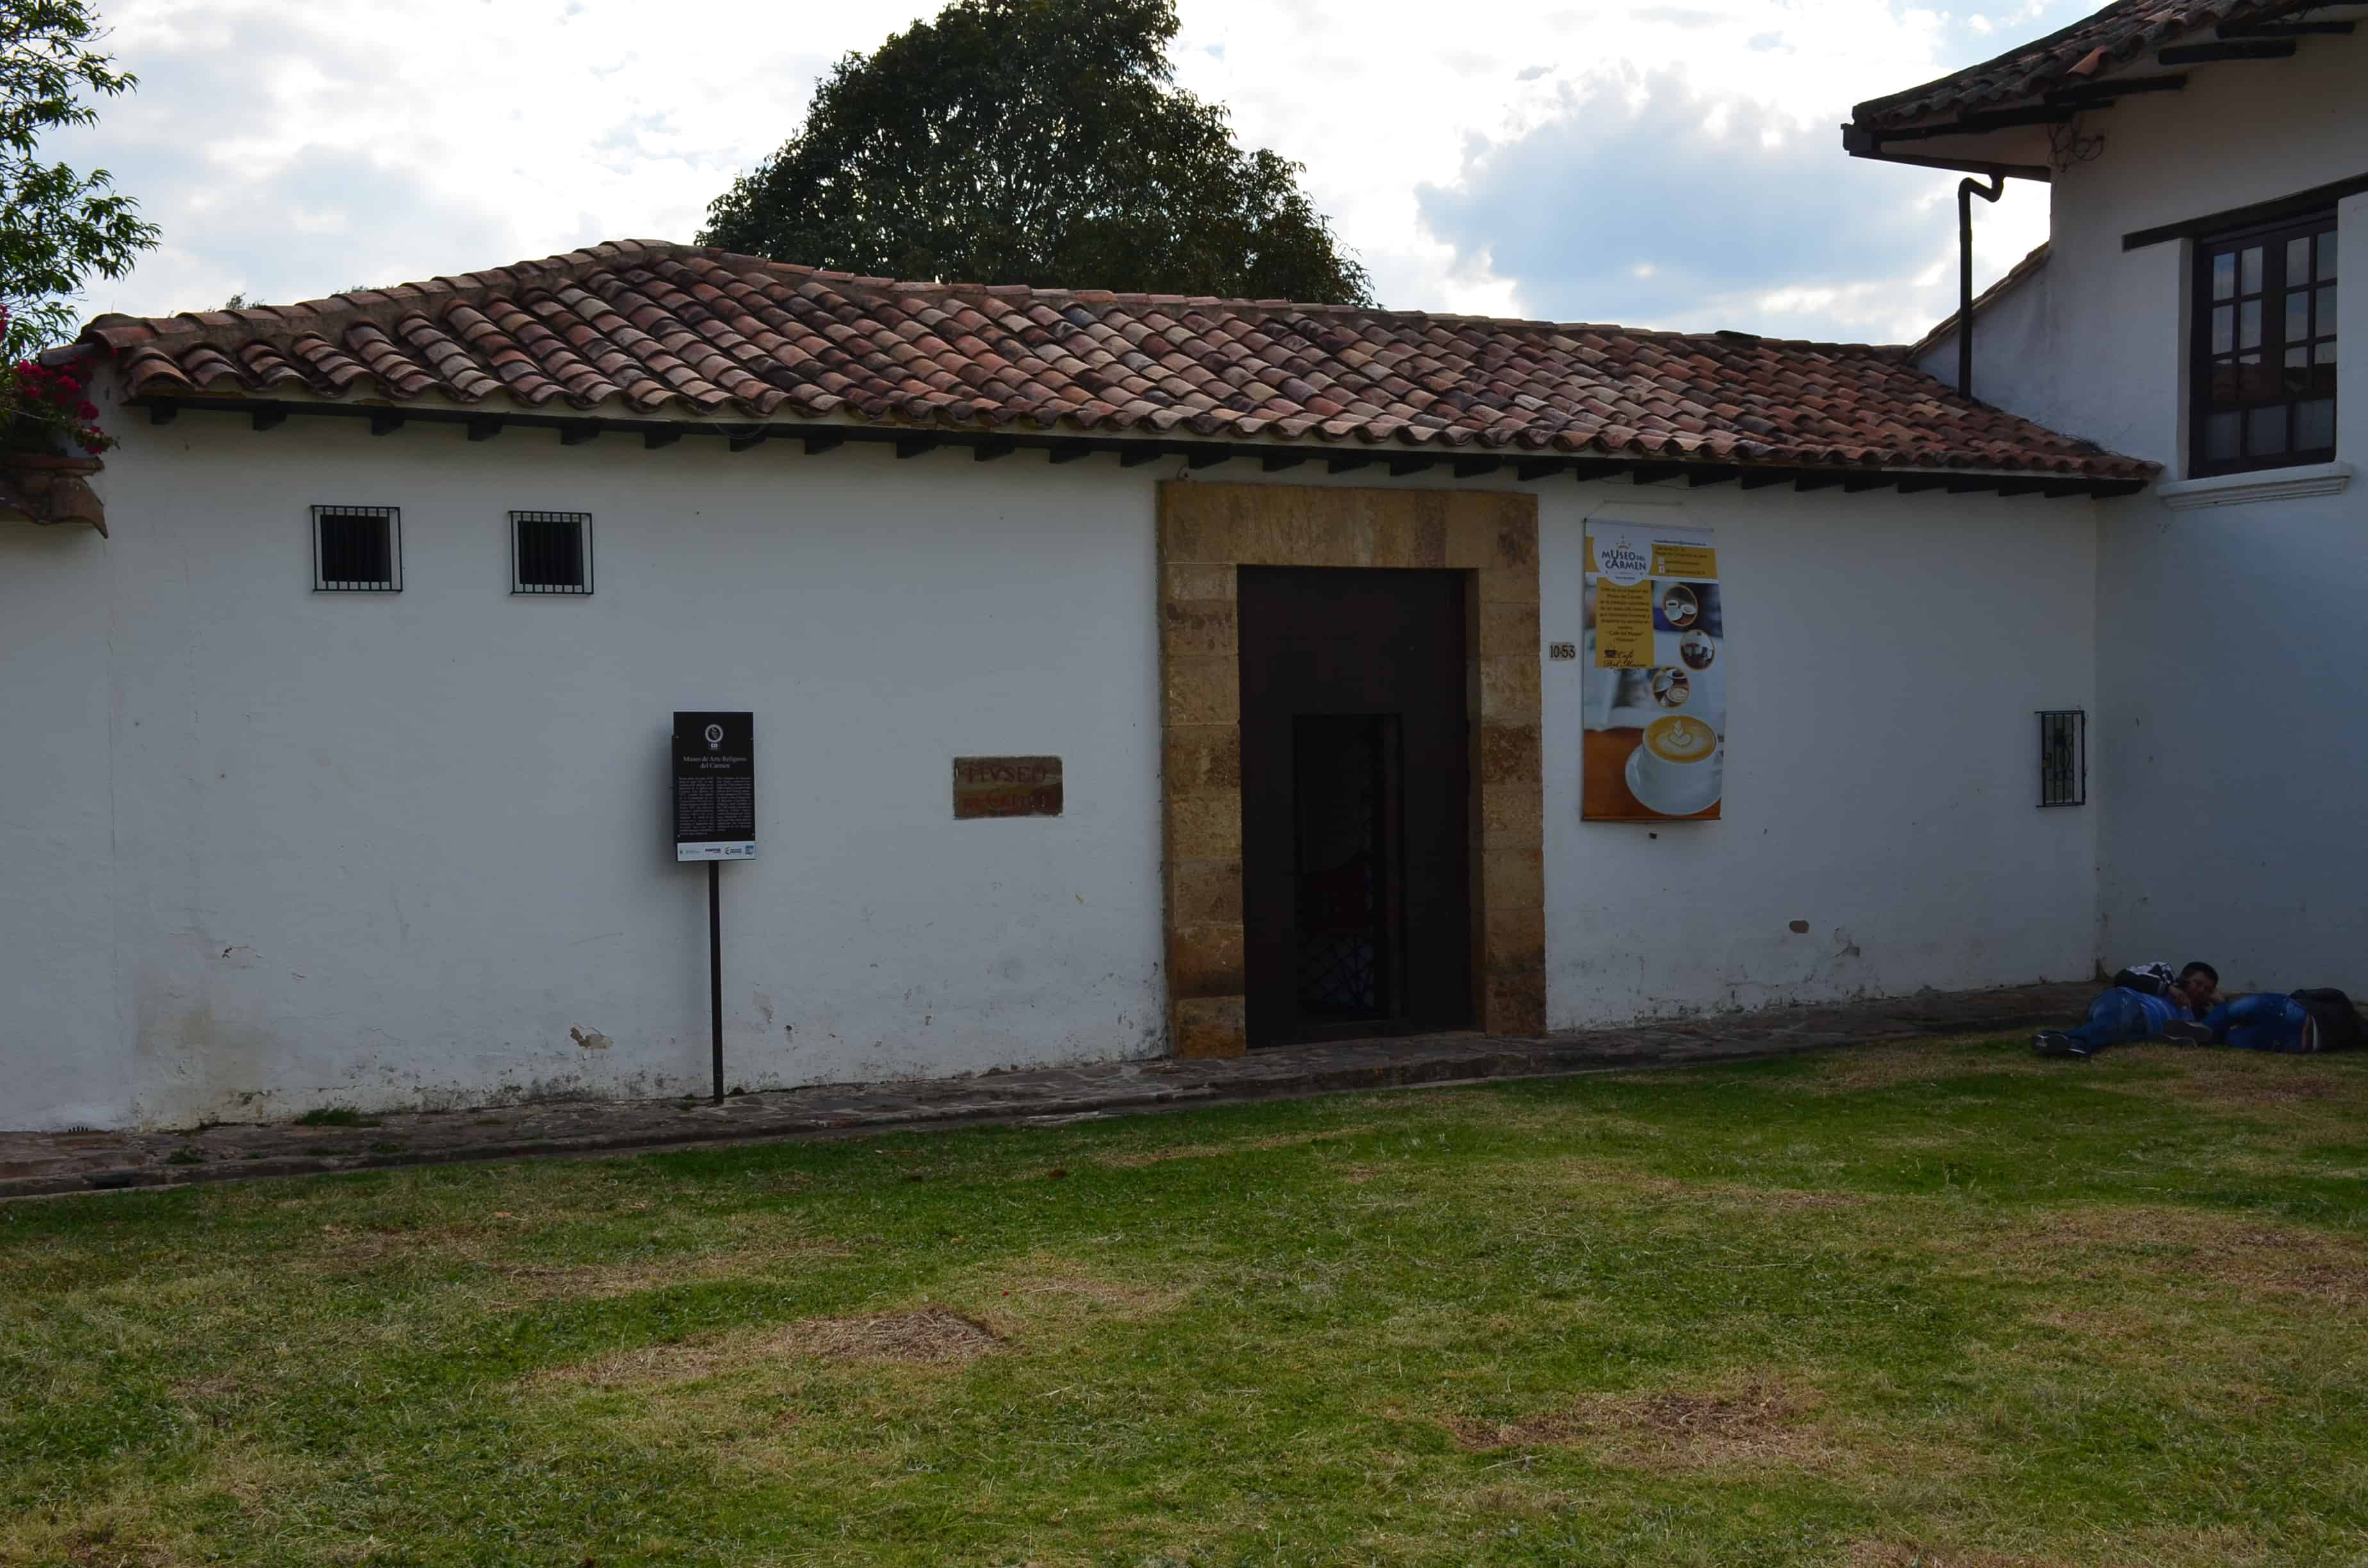 Carmelite Museum in Villa de Leyva, Boyacá, Colombia